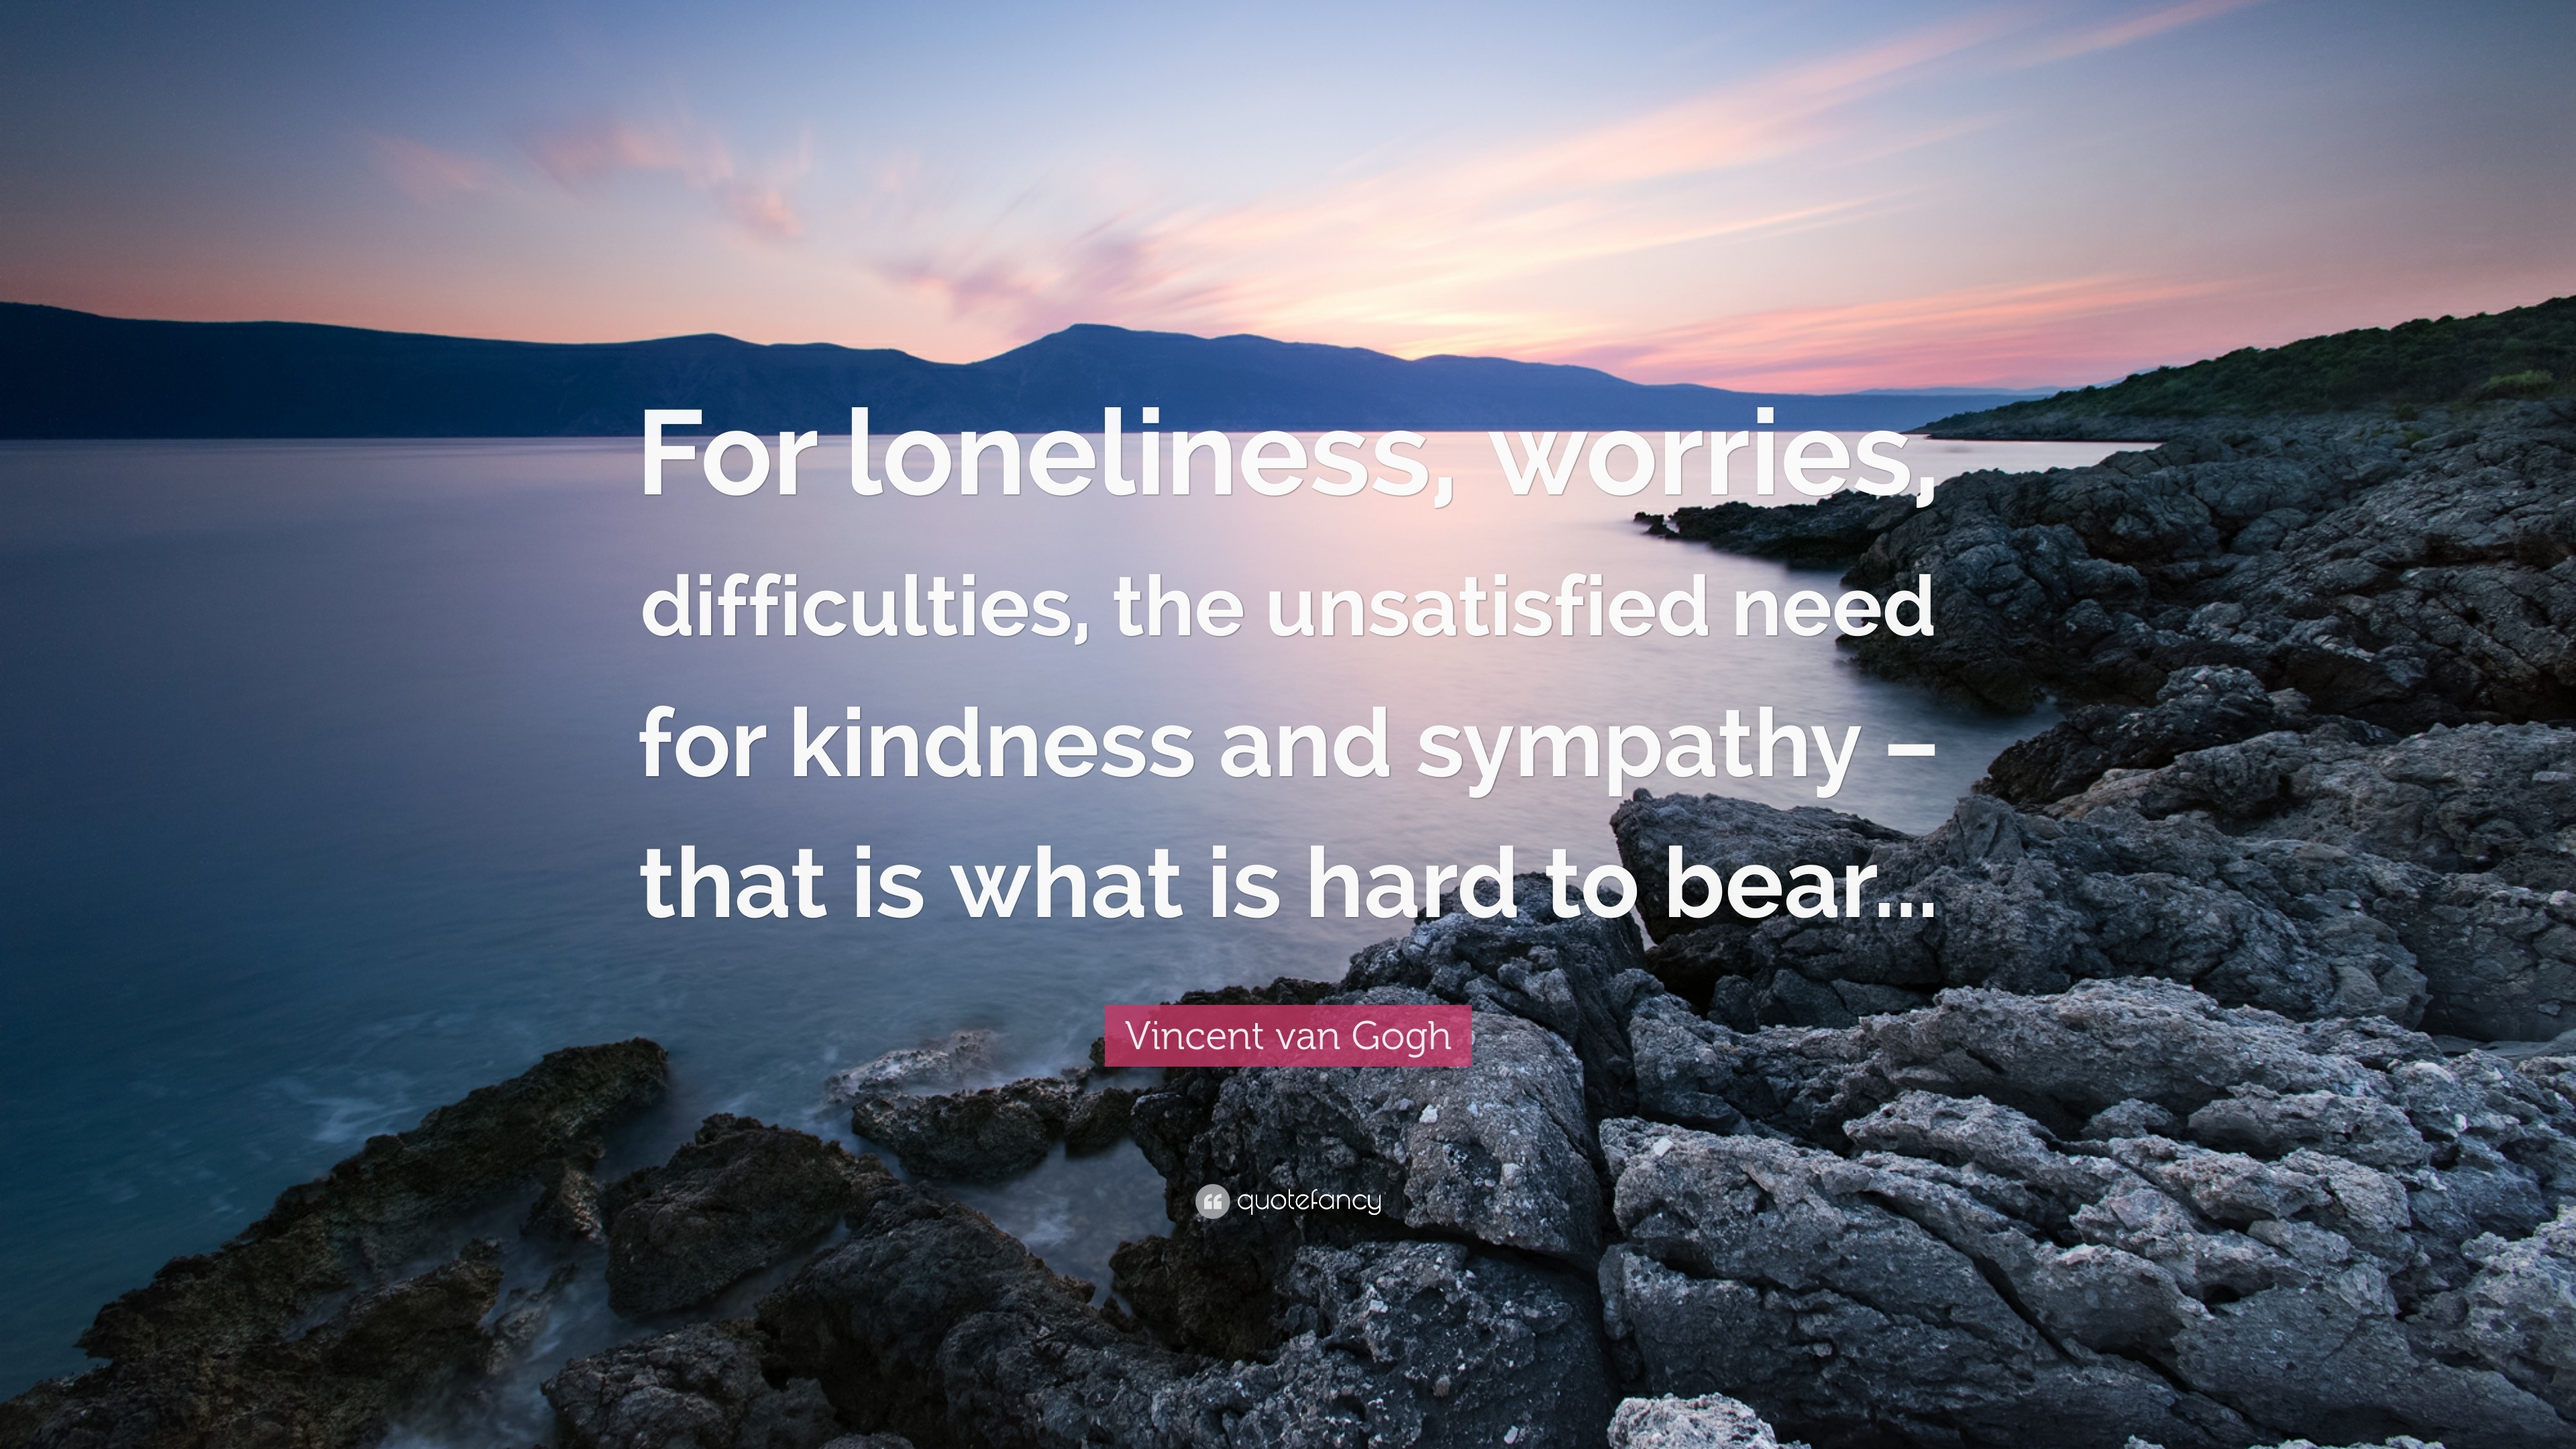 Wonderbaarlijk Vincent van Gogh Quote: “For loneliness, worries, difficulties PG-45